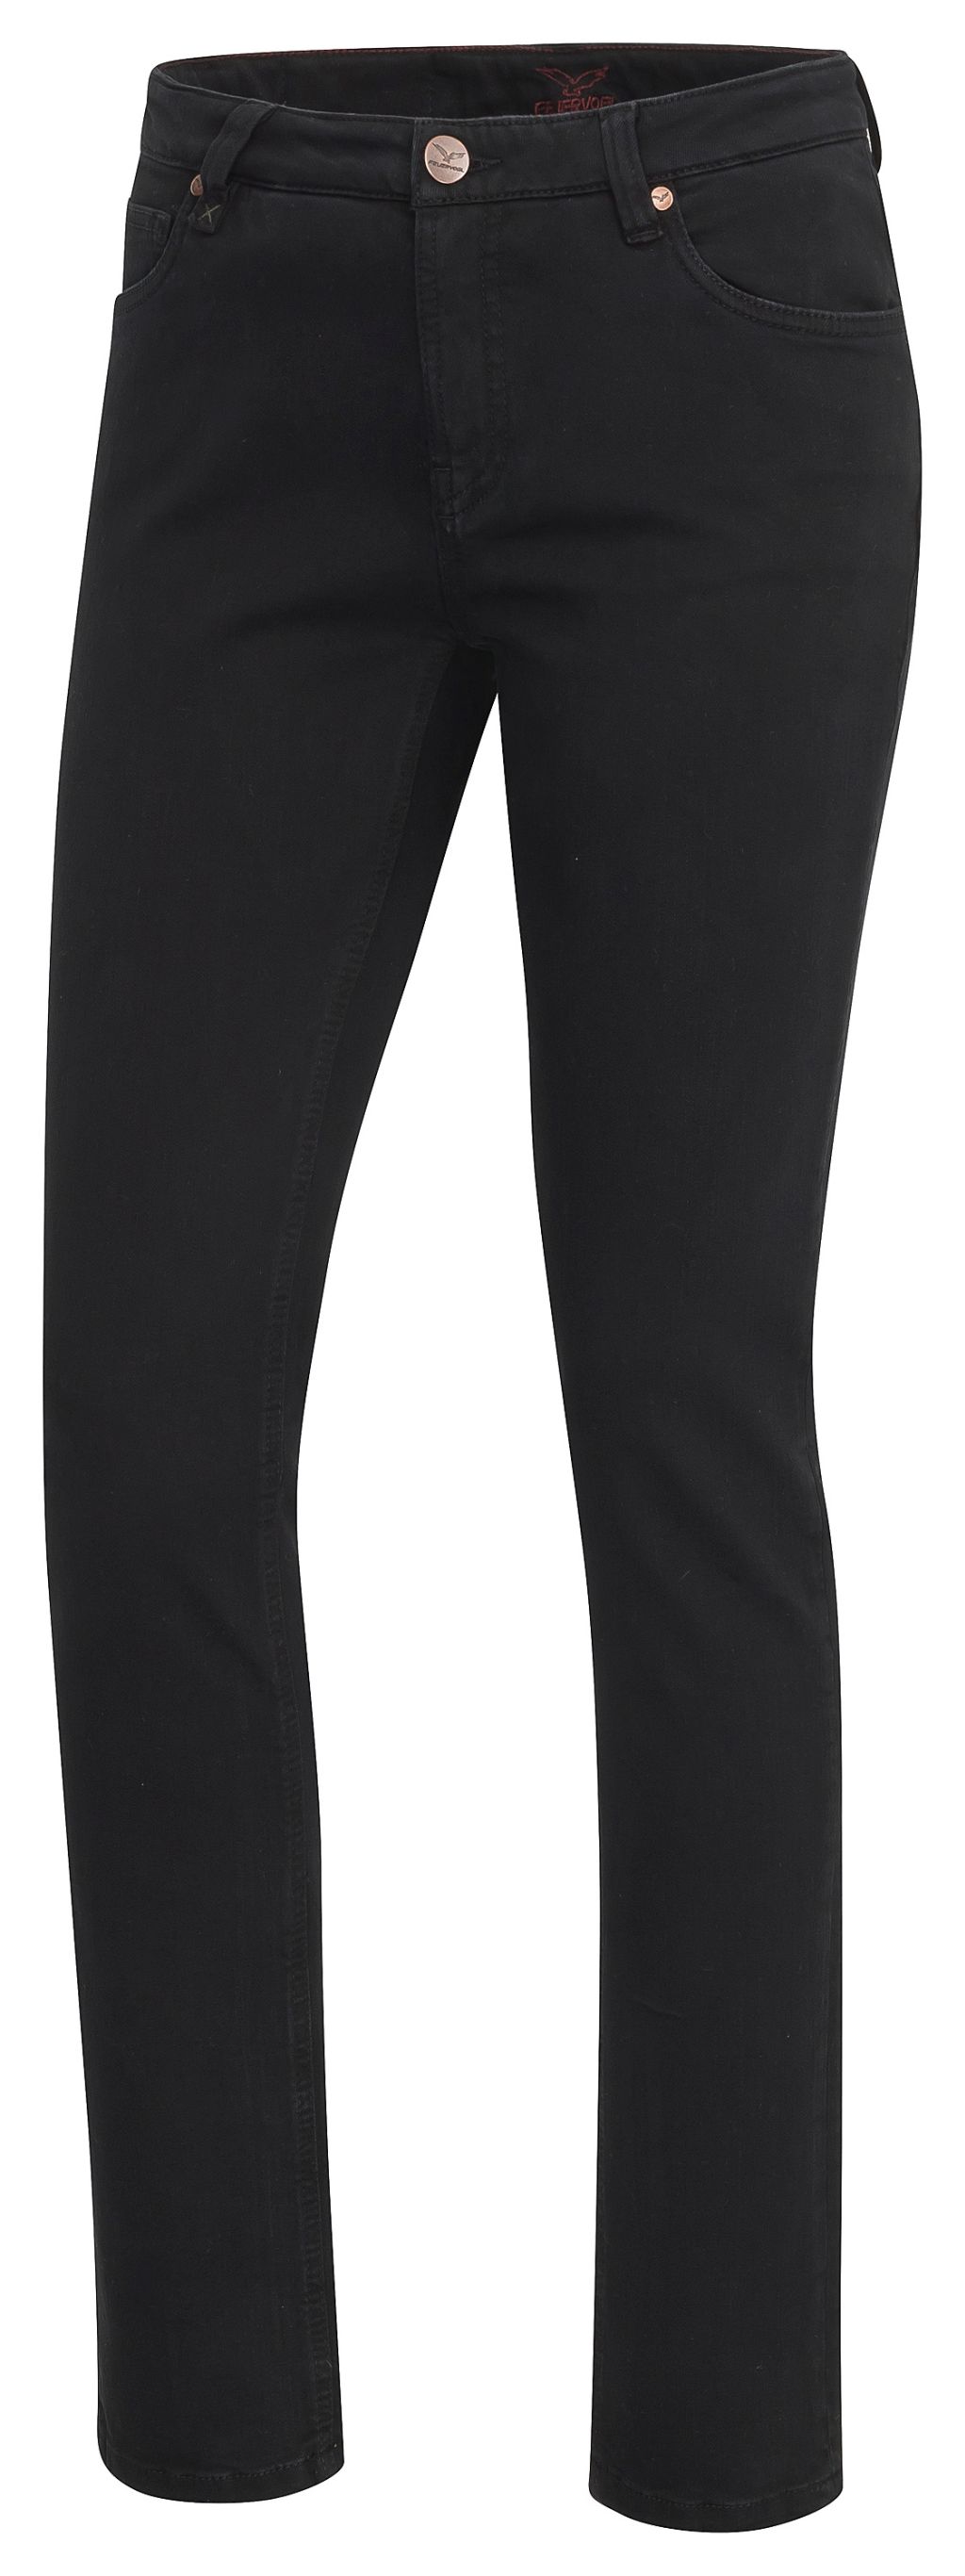 Svenja Black-Black Slim Fit Medium Waist Jeans - Bio-Baumwolle 34